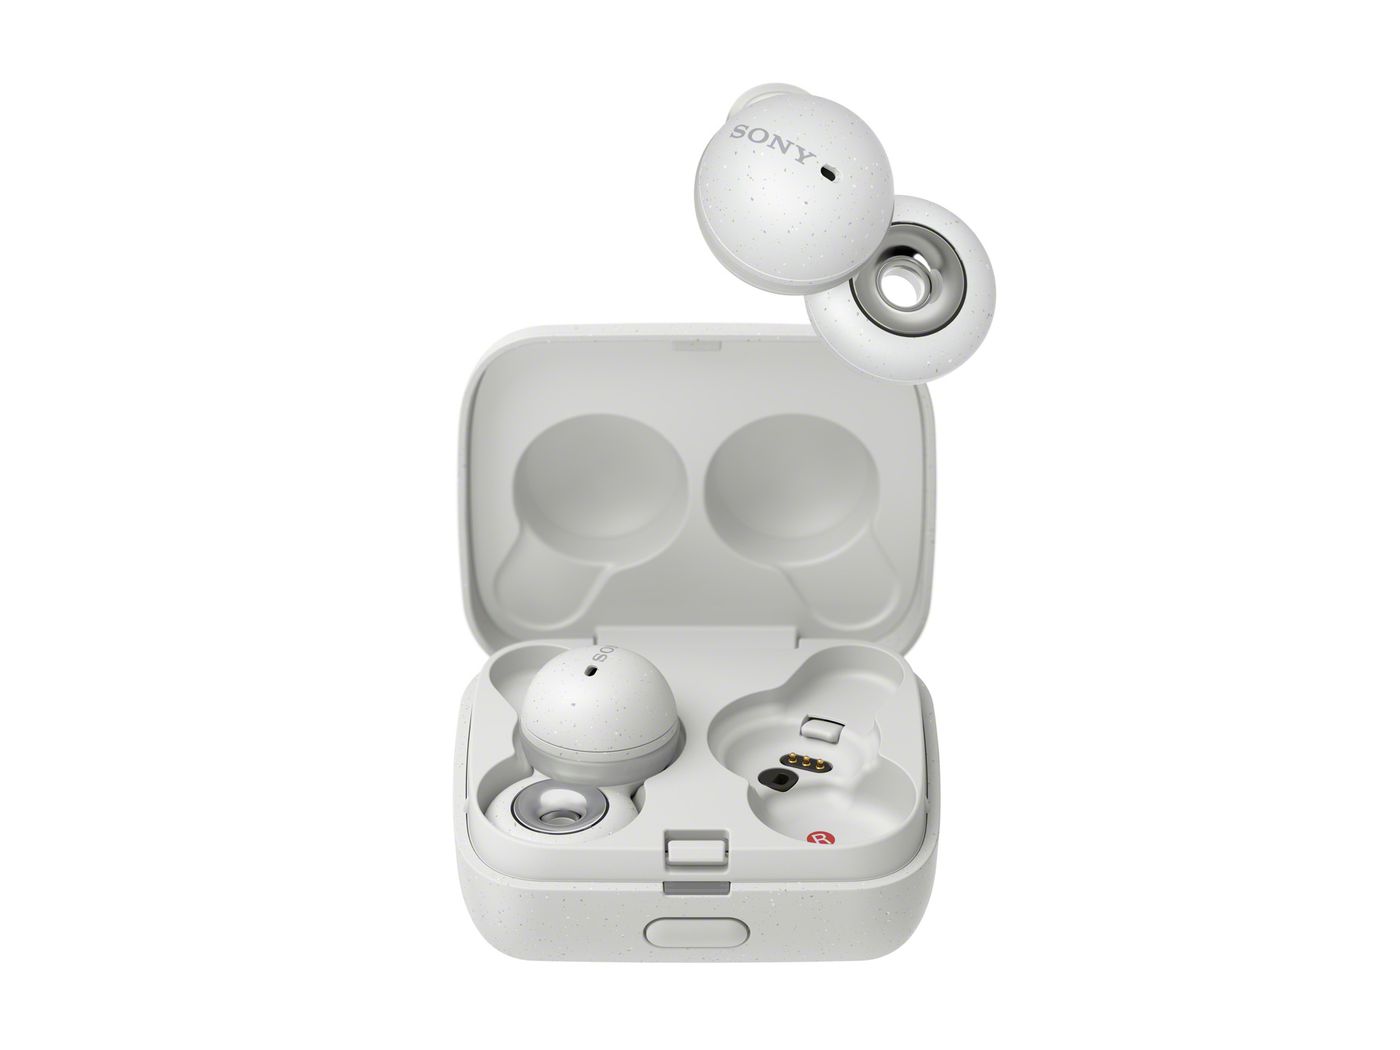 オーディオ機器 イヤフォン Sony announces open-style LinkBuds earbuds for $179.99 - The Verge